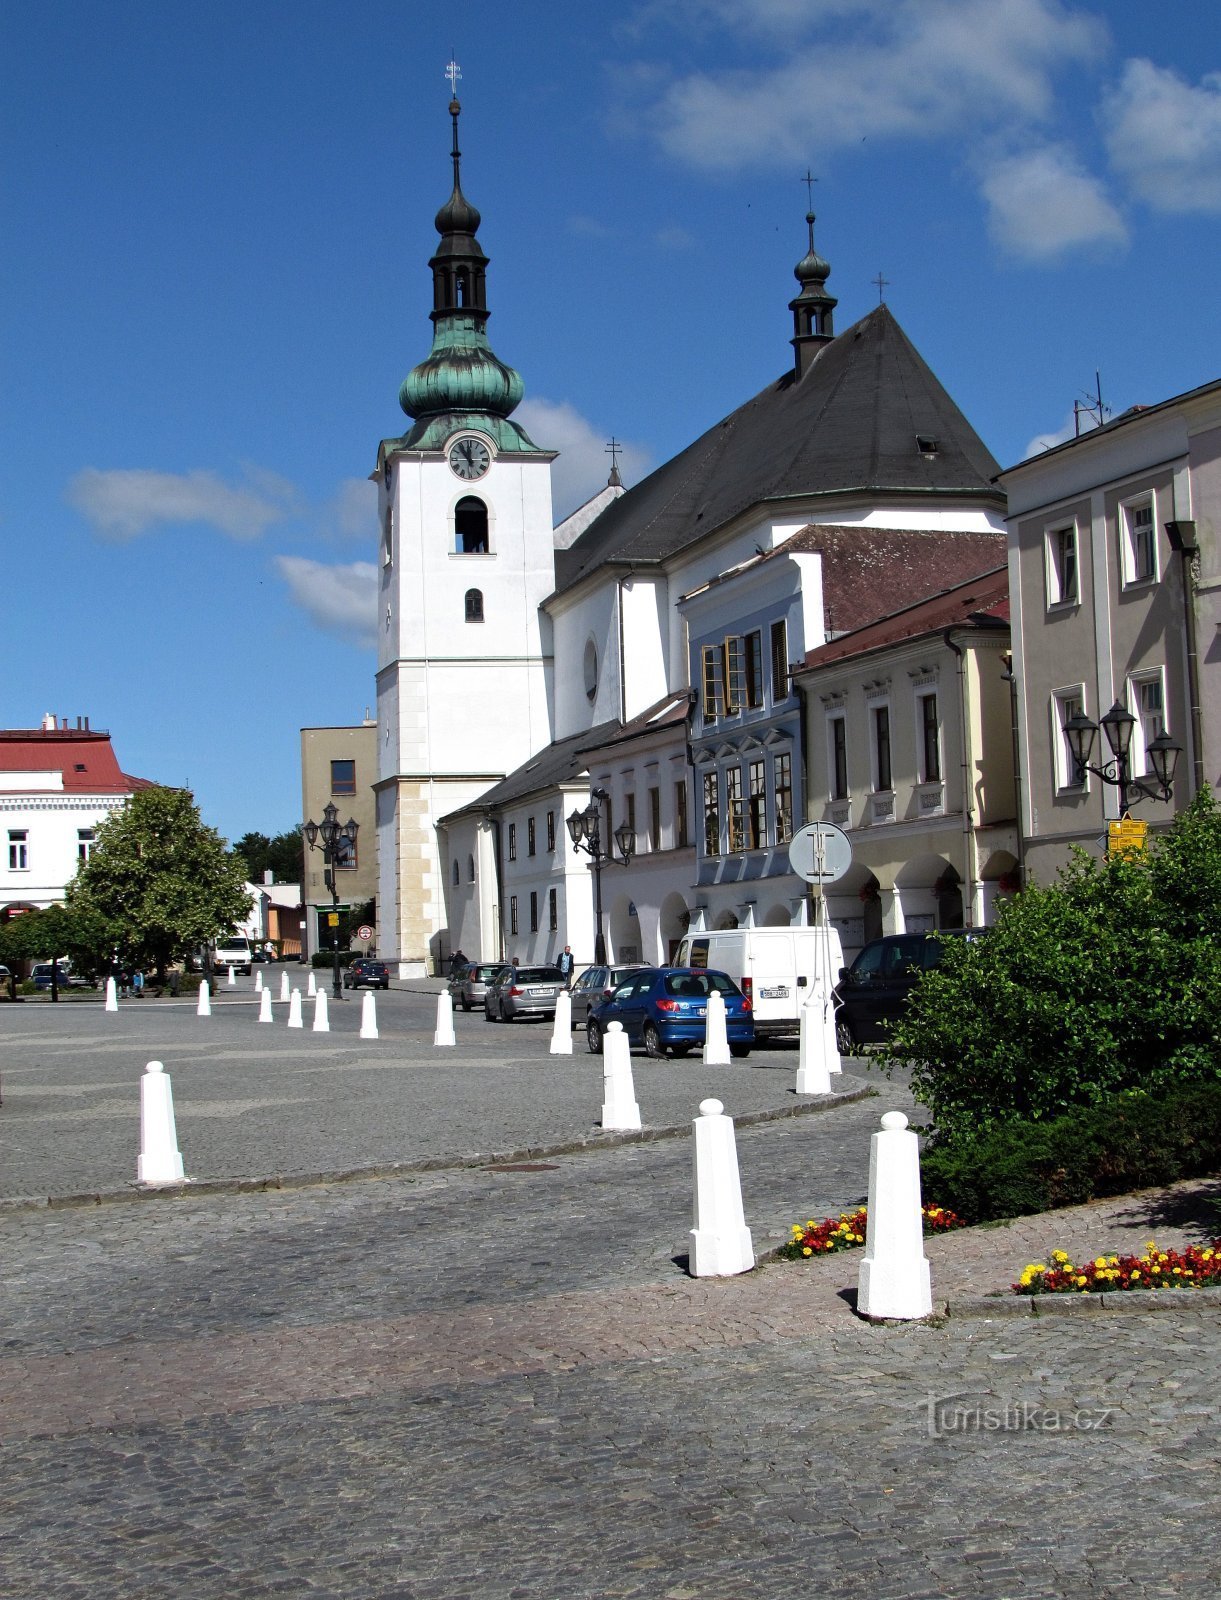 The main Svitava church